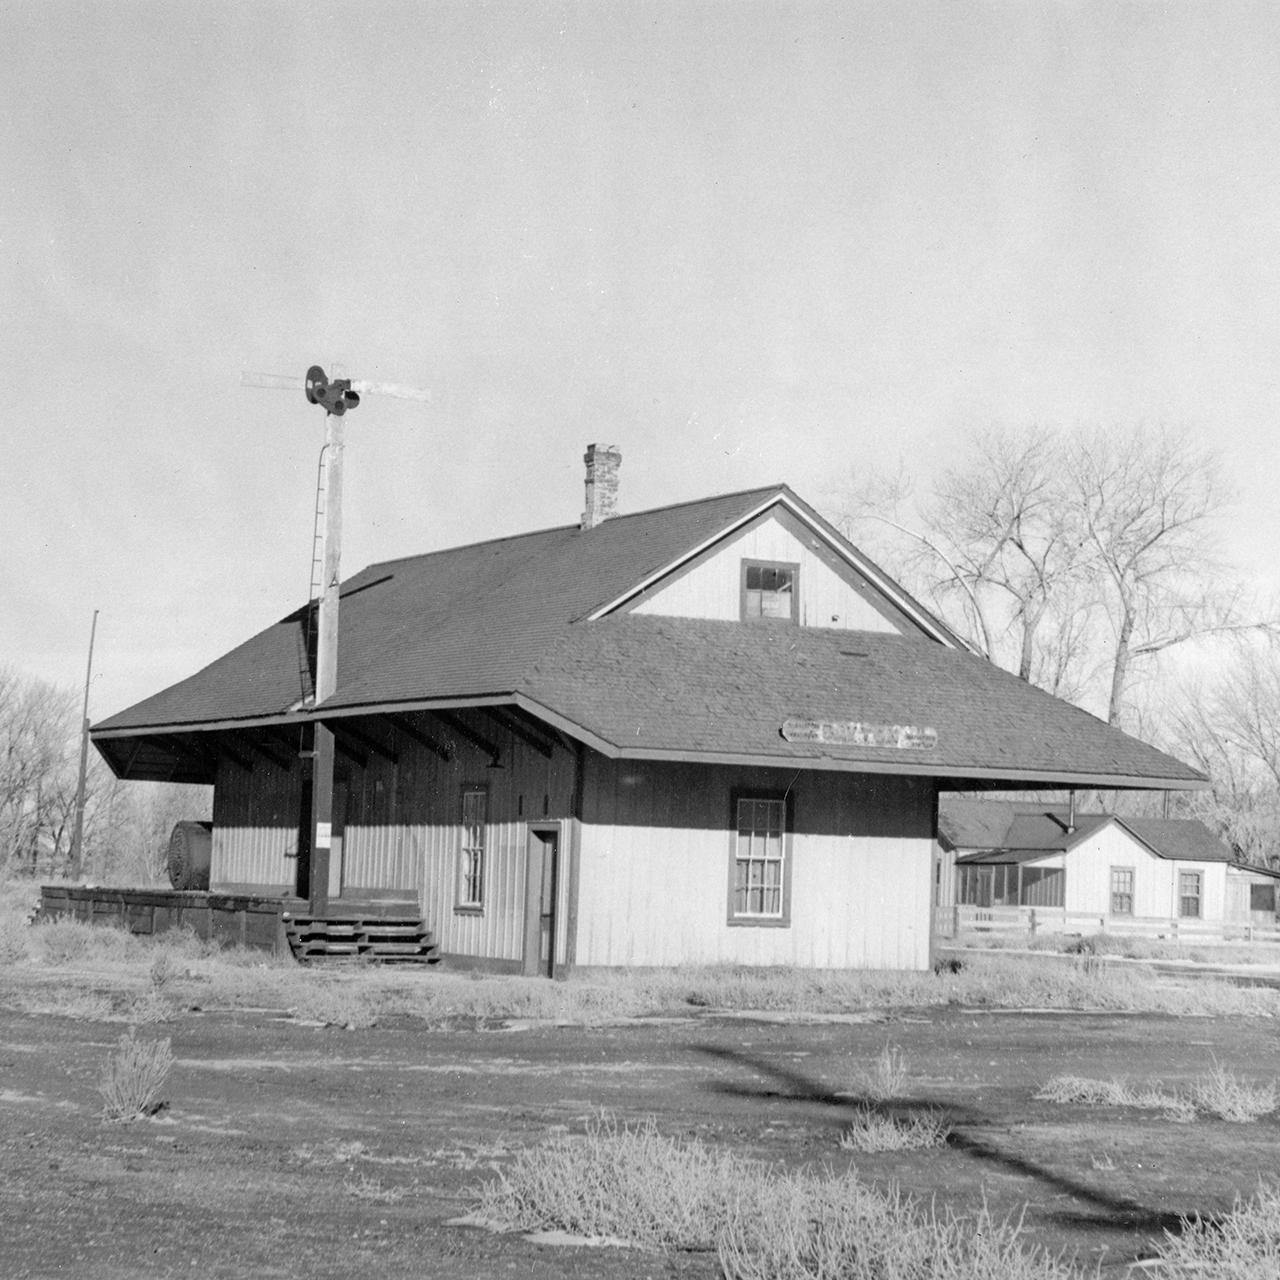 Dayton Depot, 1940s